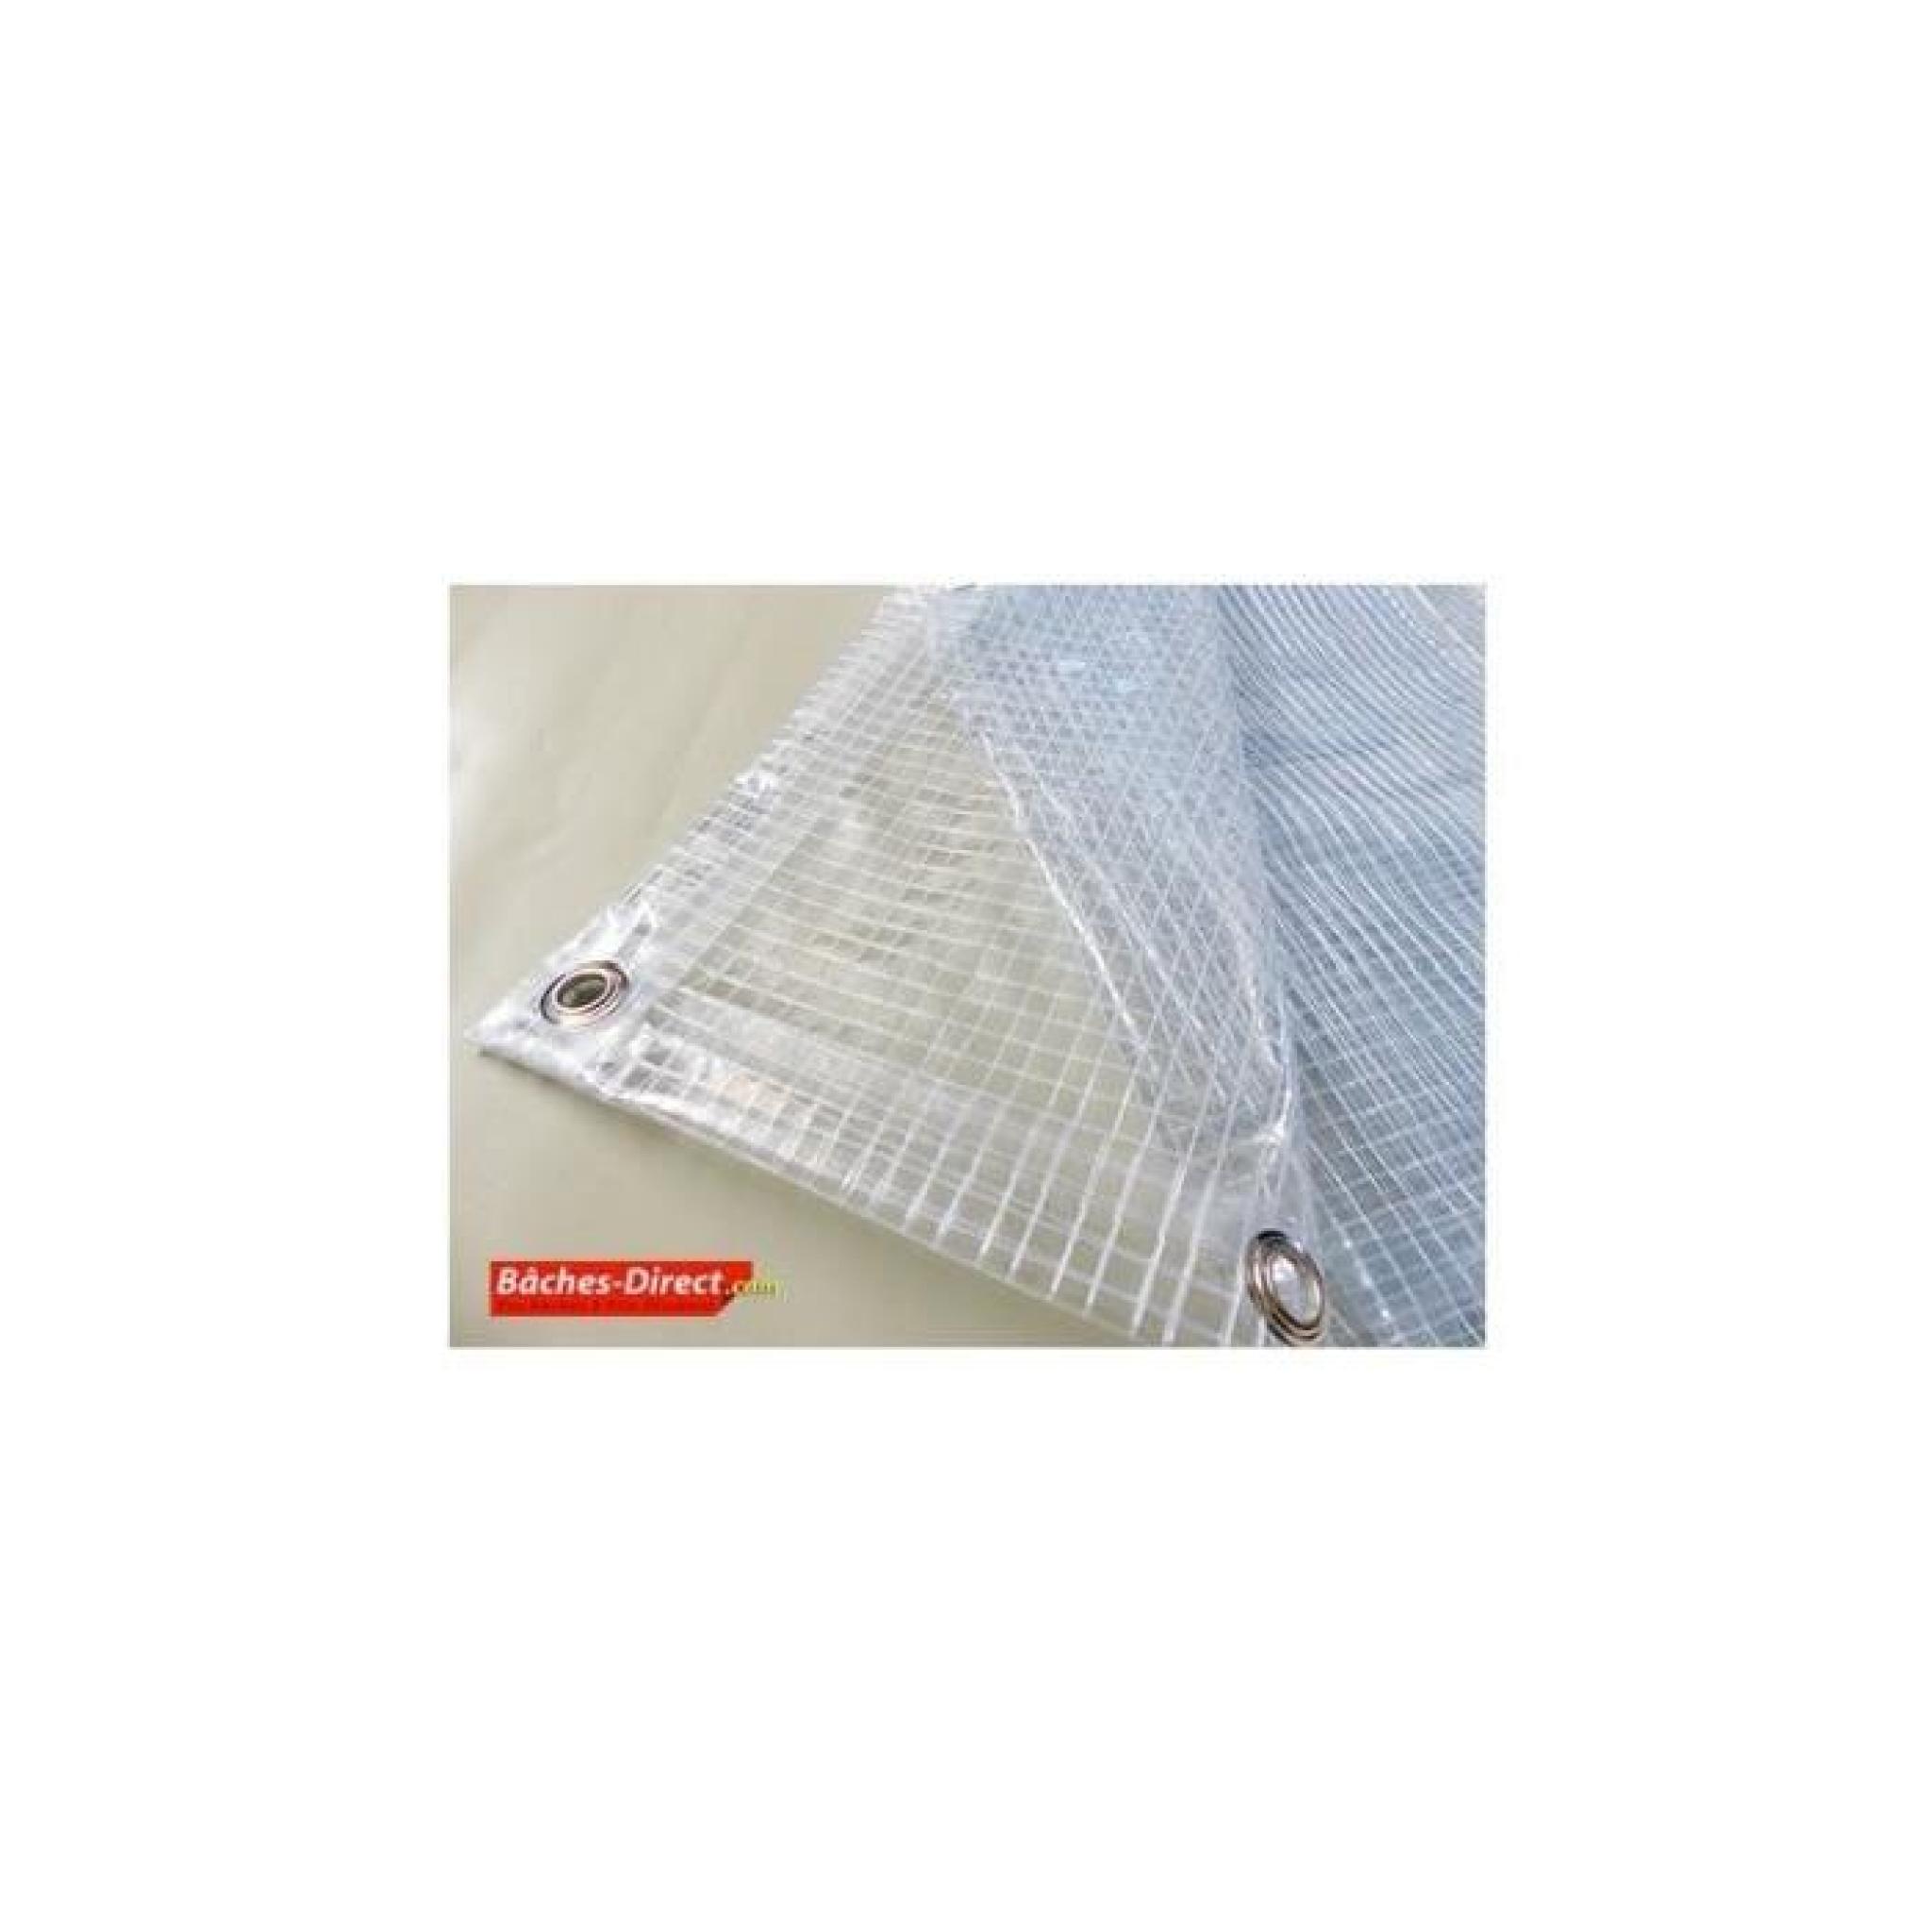 Bâche Pergola 400 g/m² - 2.1 x 10 m - bache transparente pour toile de pergola - bache imperméable Transparente Armée